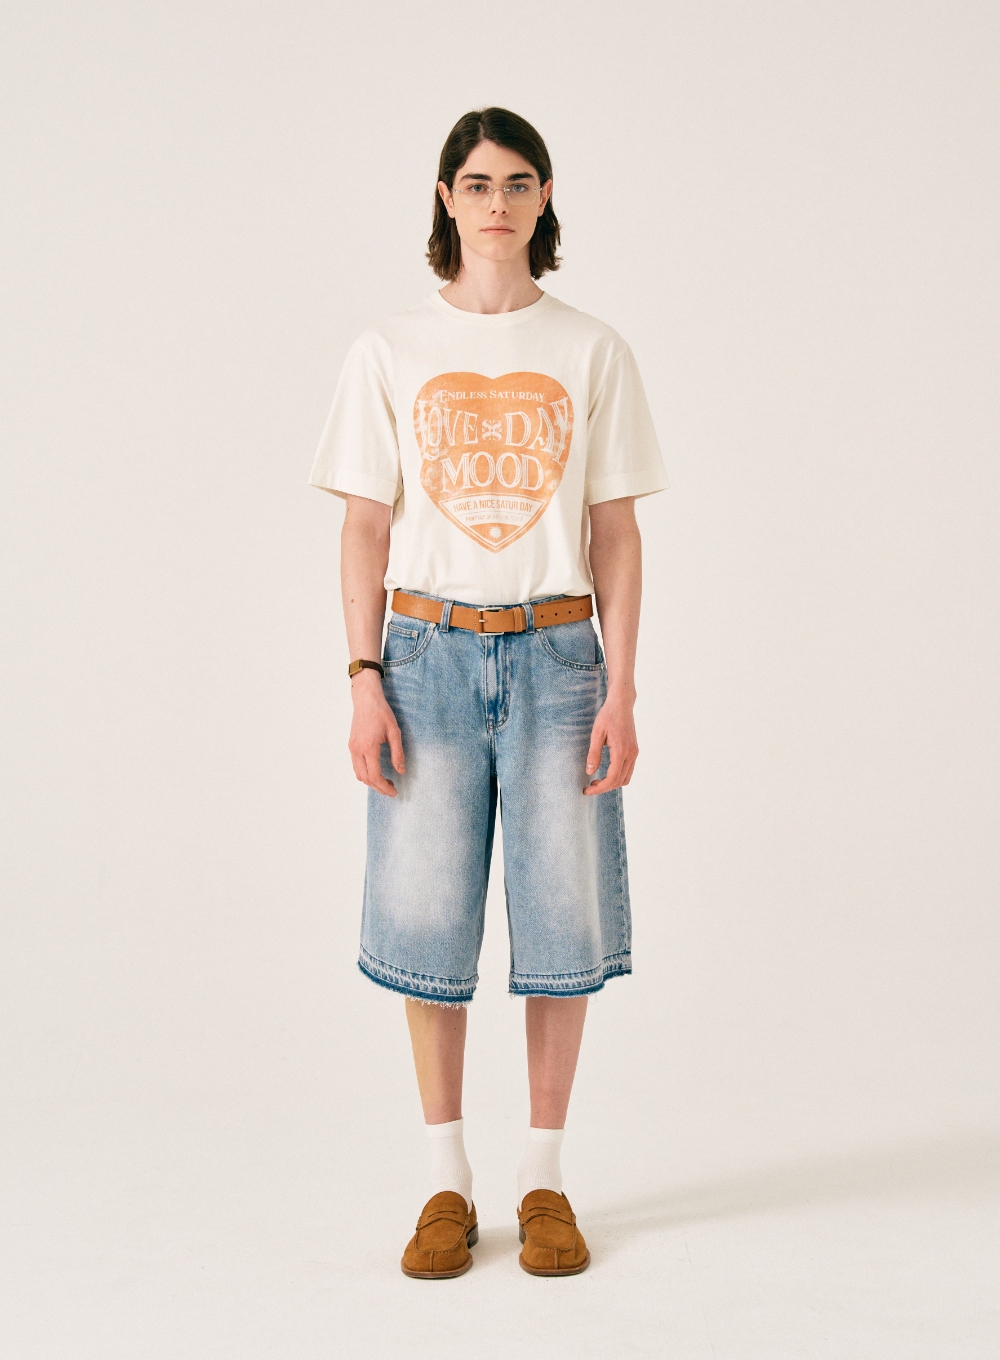 [5,000원 쿠폰] Saturday Retro Mood Graphic T-Shirts - Cream Orange